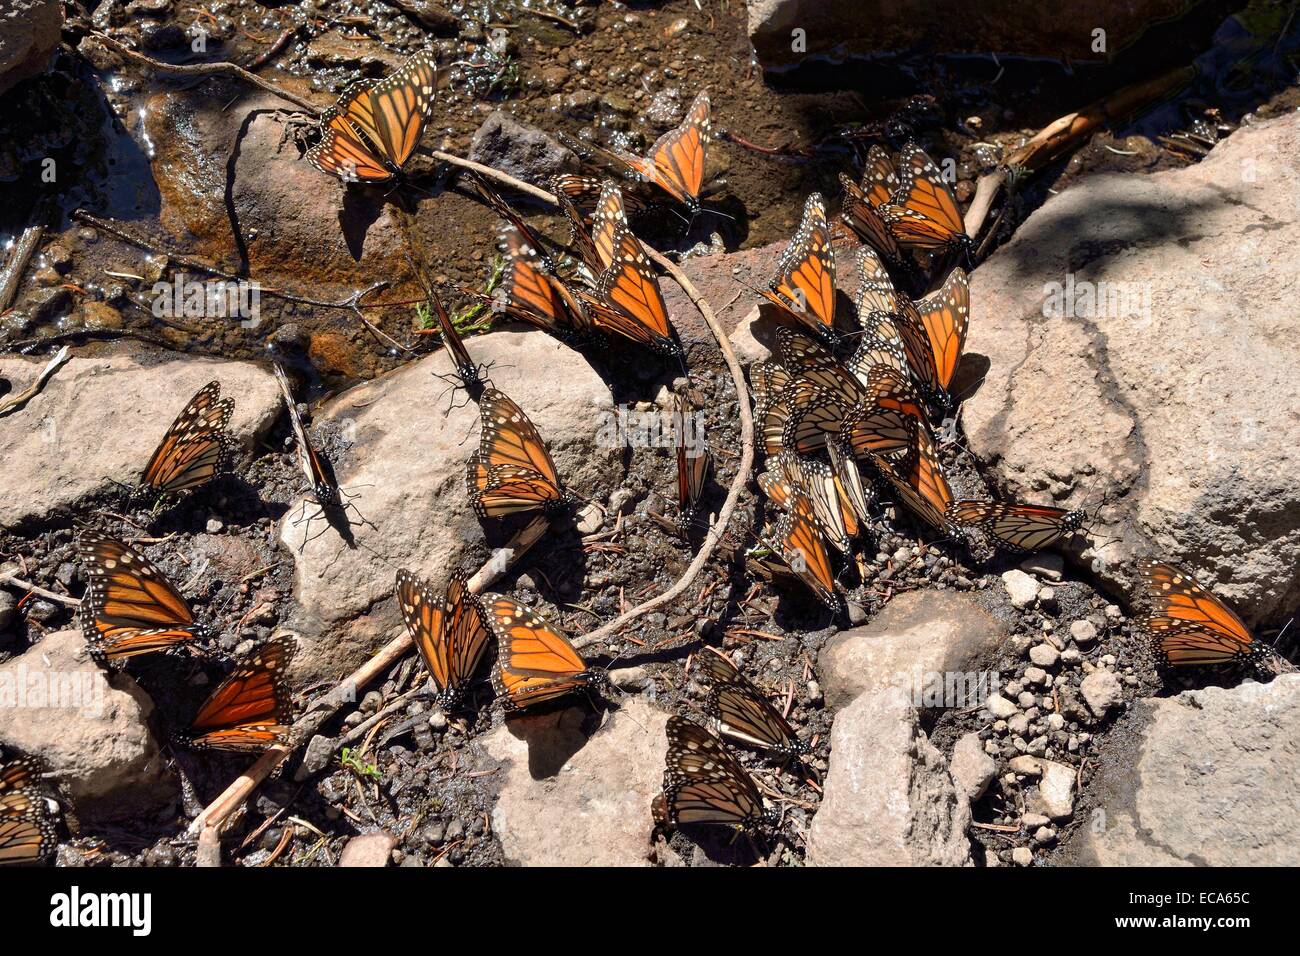 Farfalla monarca (Danaus plexippus) bere in una pozzanghera, El Rosario, Riserva della biosfera delle farfalle monarca, mariposa Monarca Foto Stock